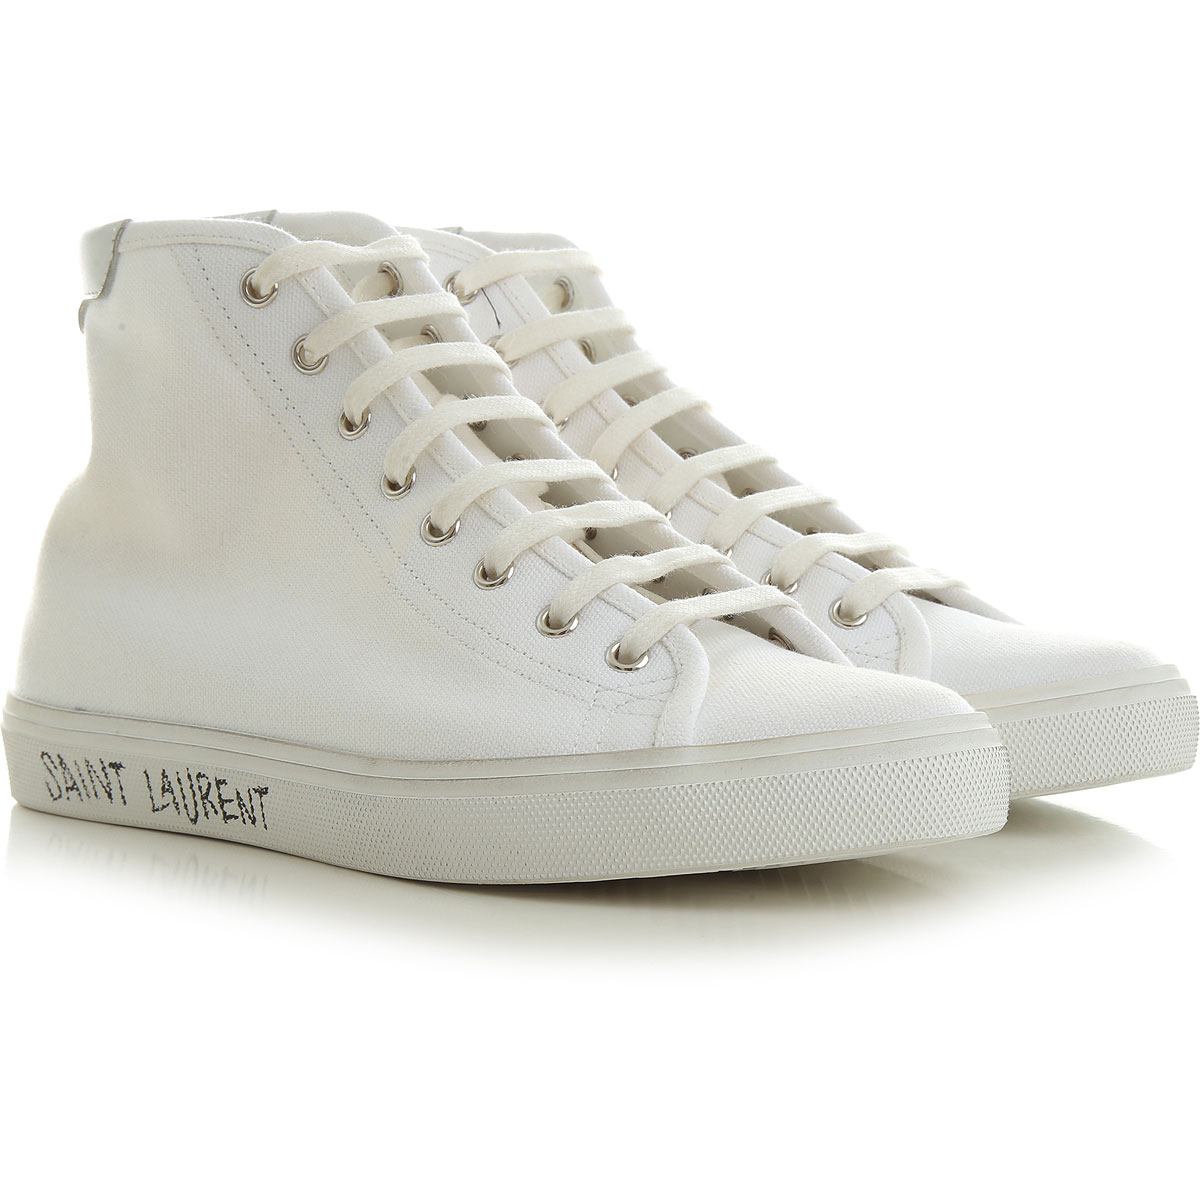 Mens Shoes Saint Laurent, Style code: 606075-guz20-9030